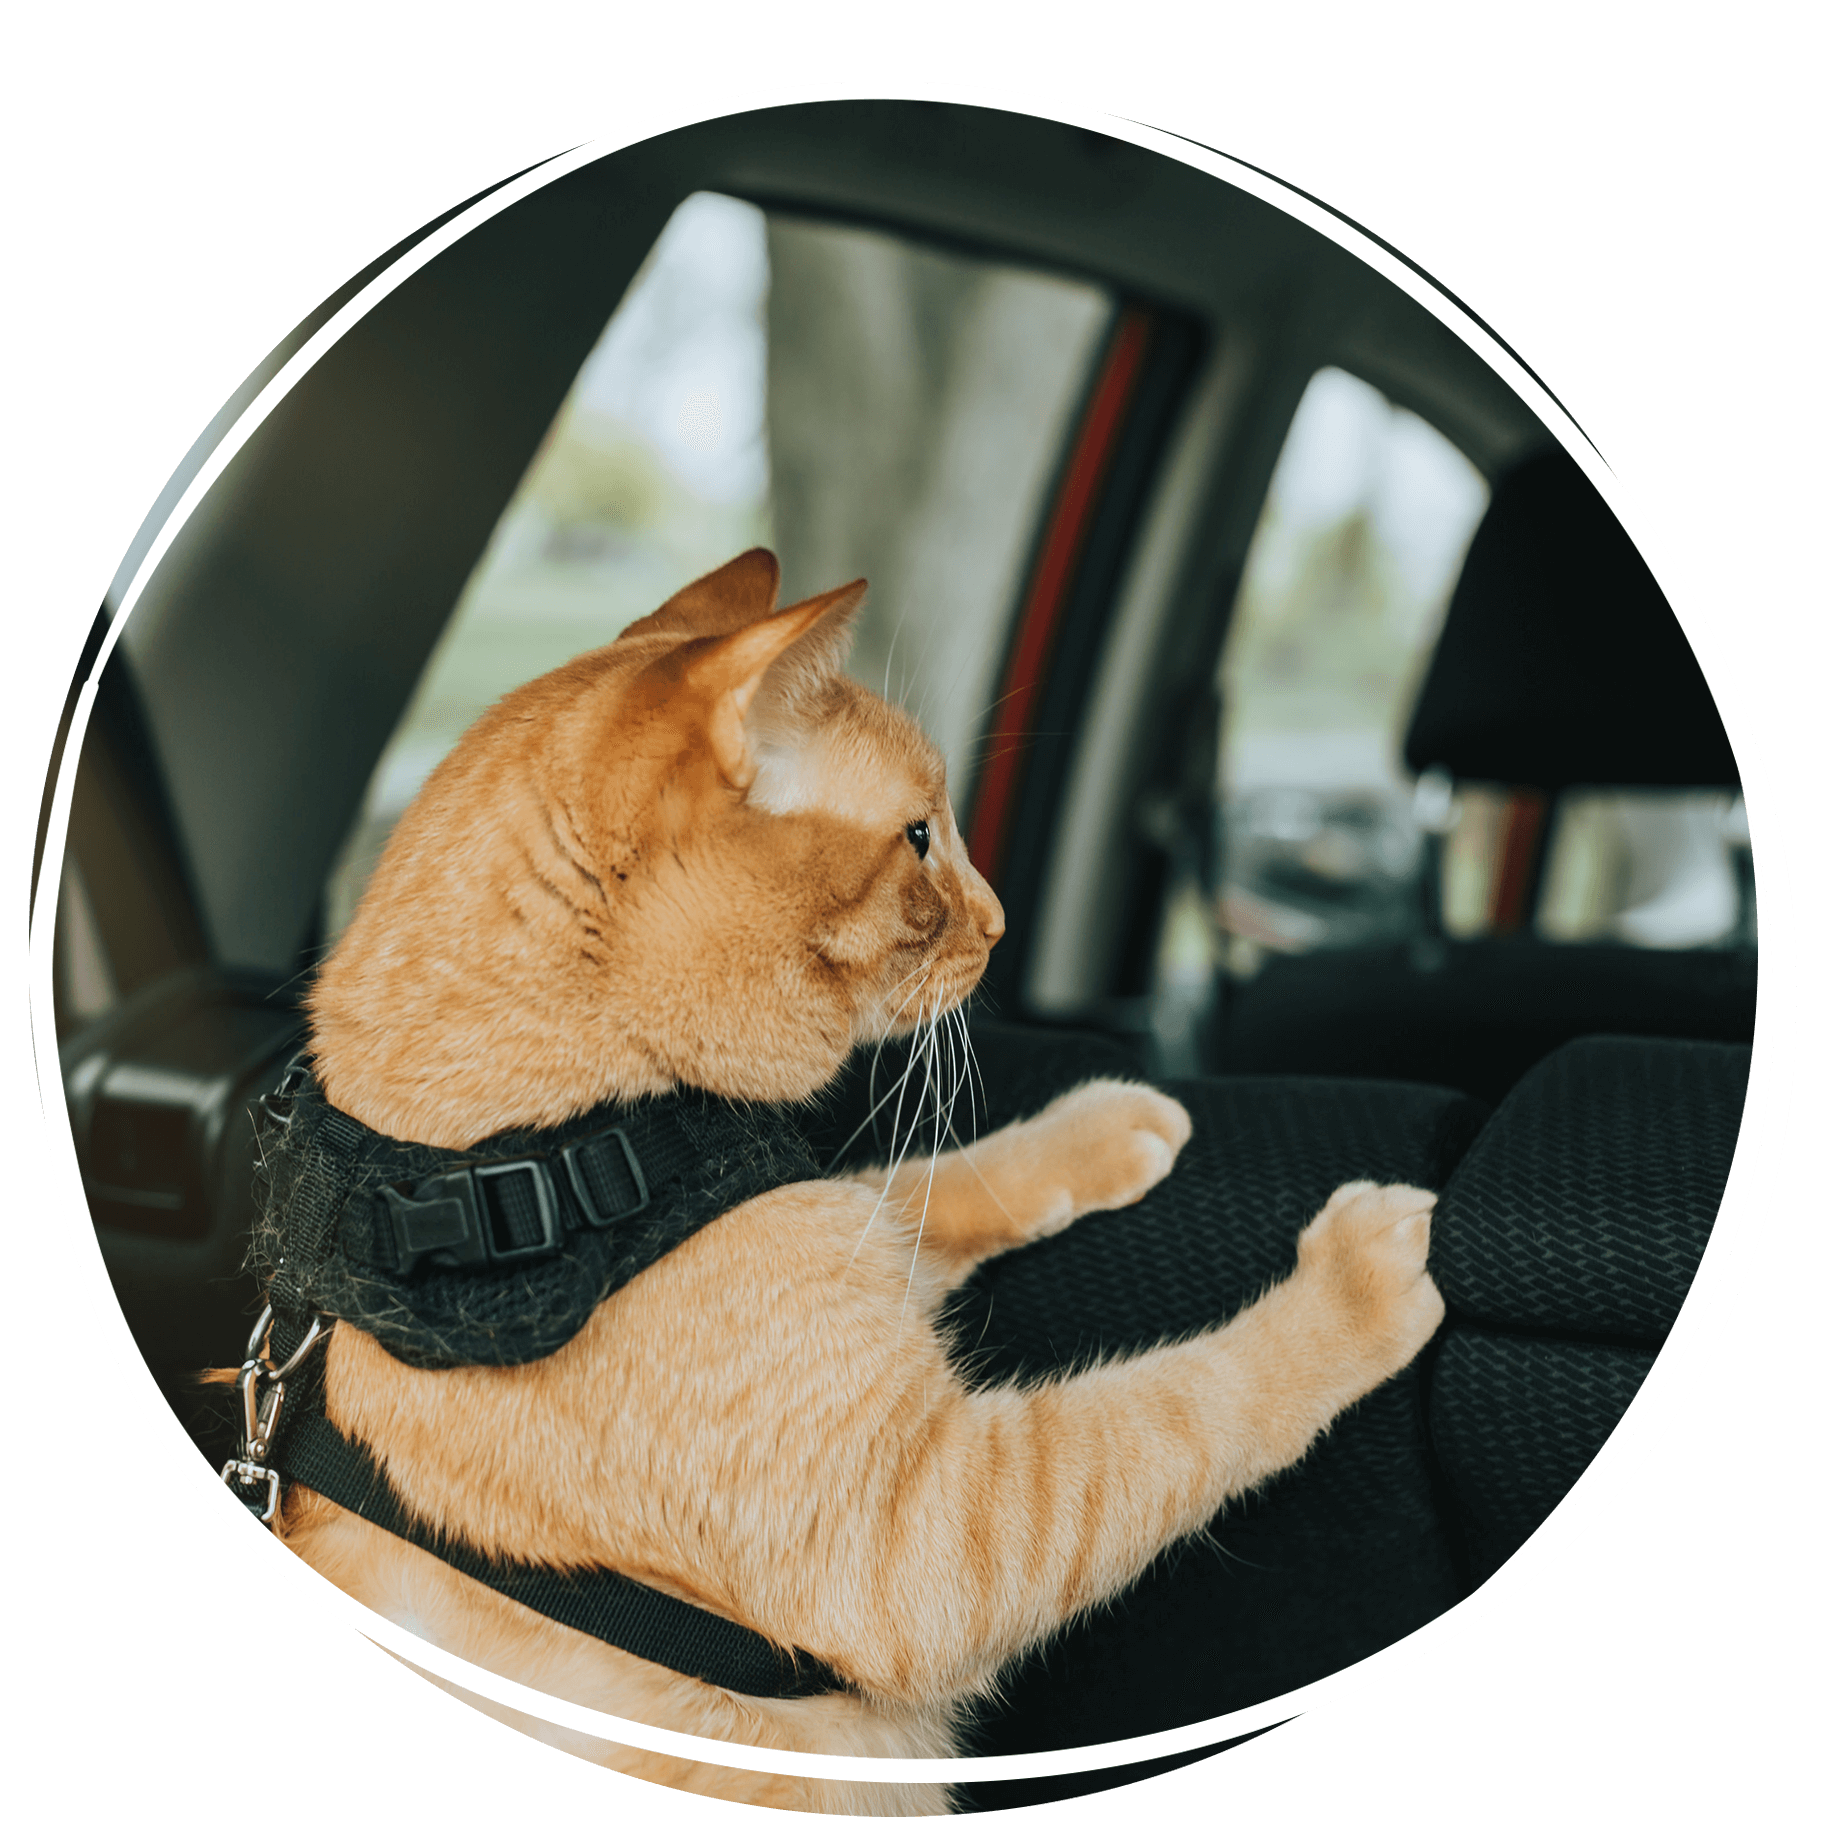 cat in car